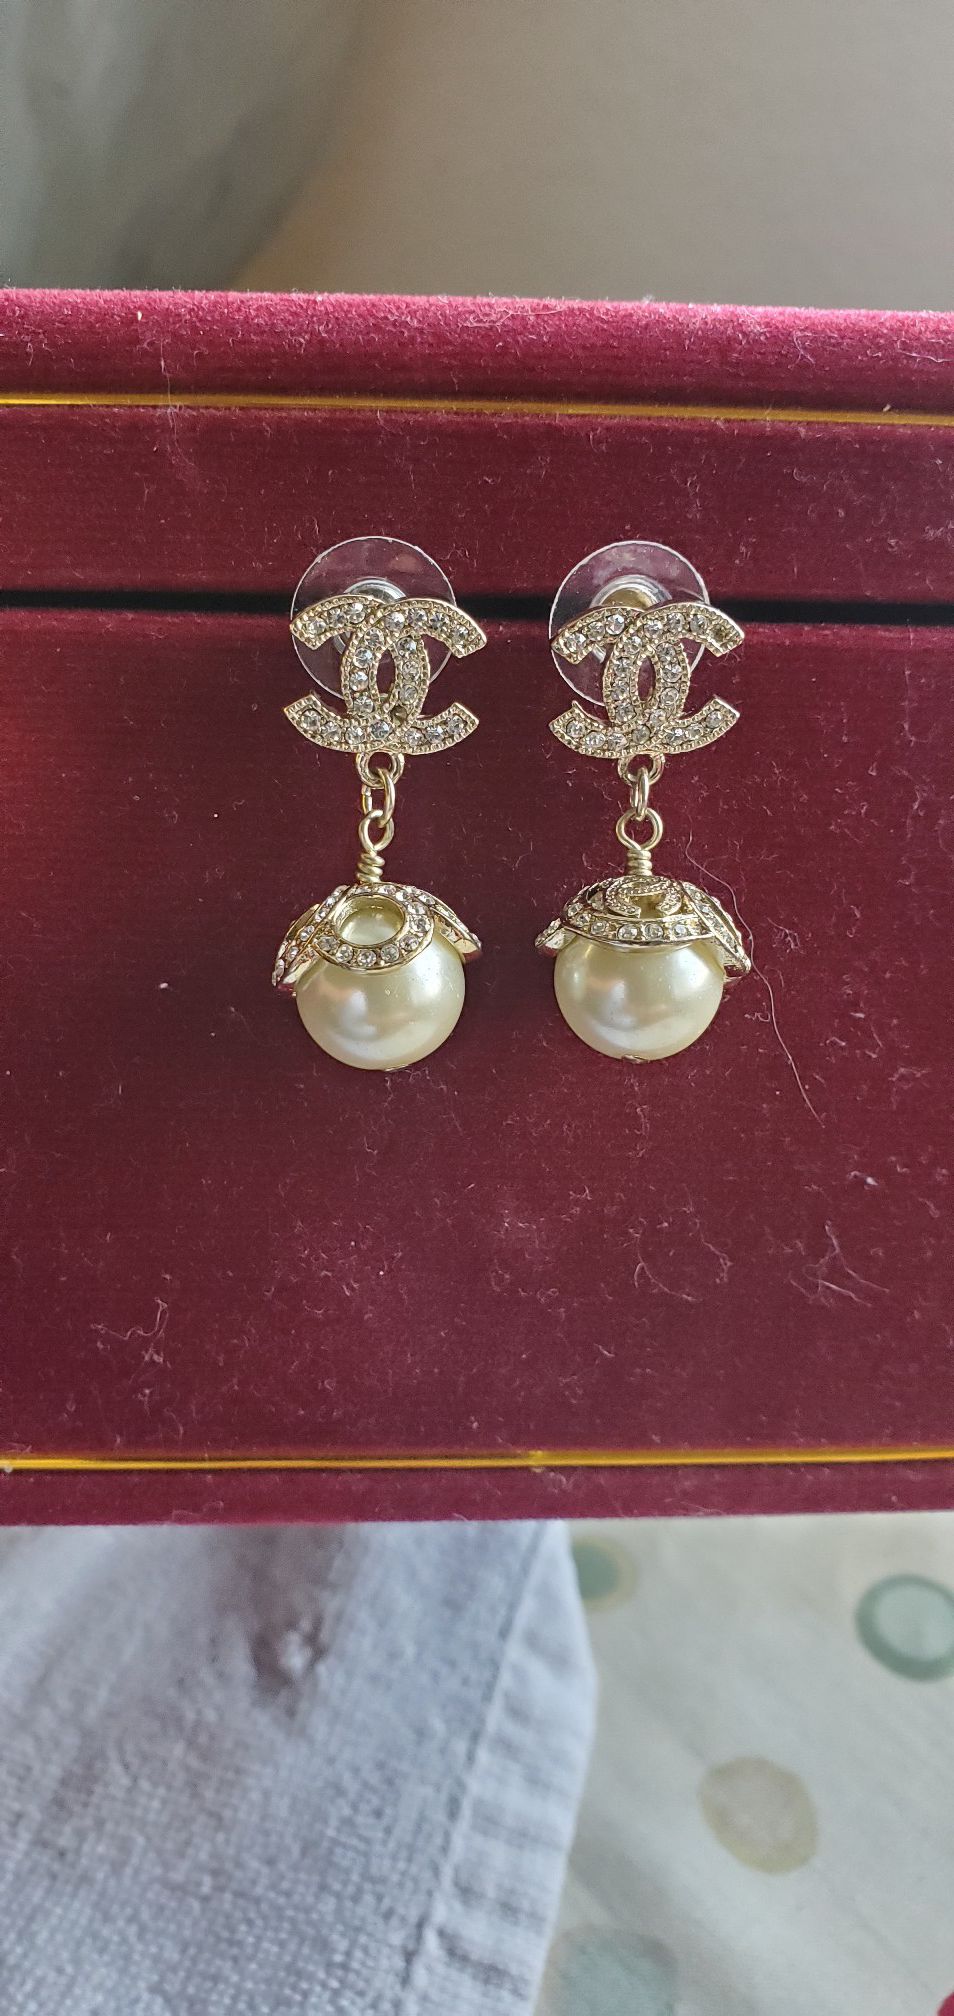 Channel pearl earrings